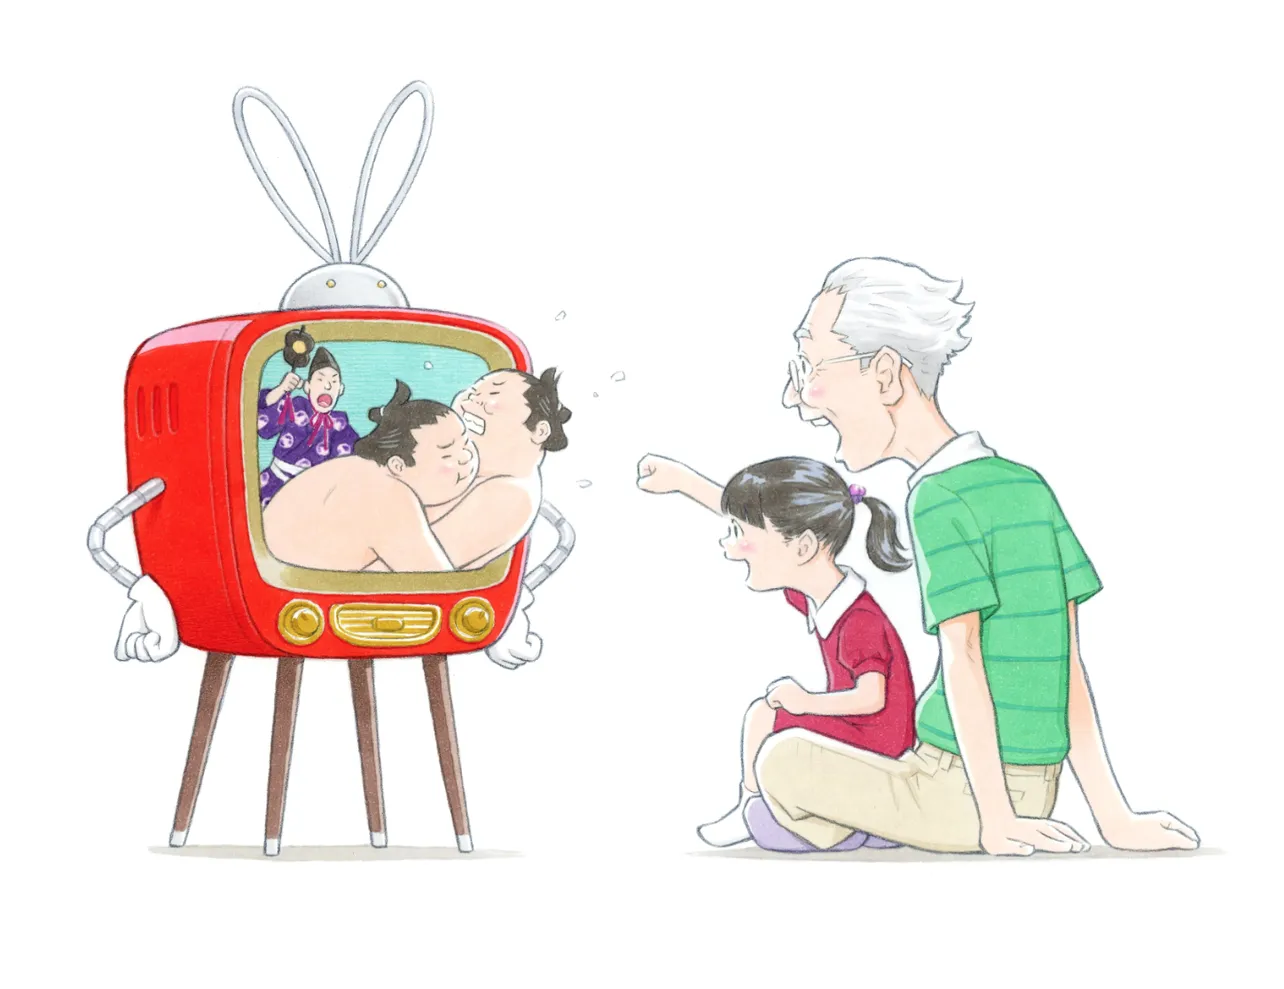 窪之内英策作「楽しくテレビを見ているおじいちゃんと孫」